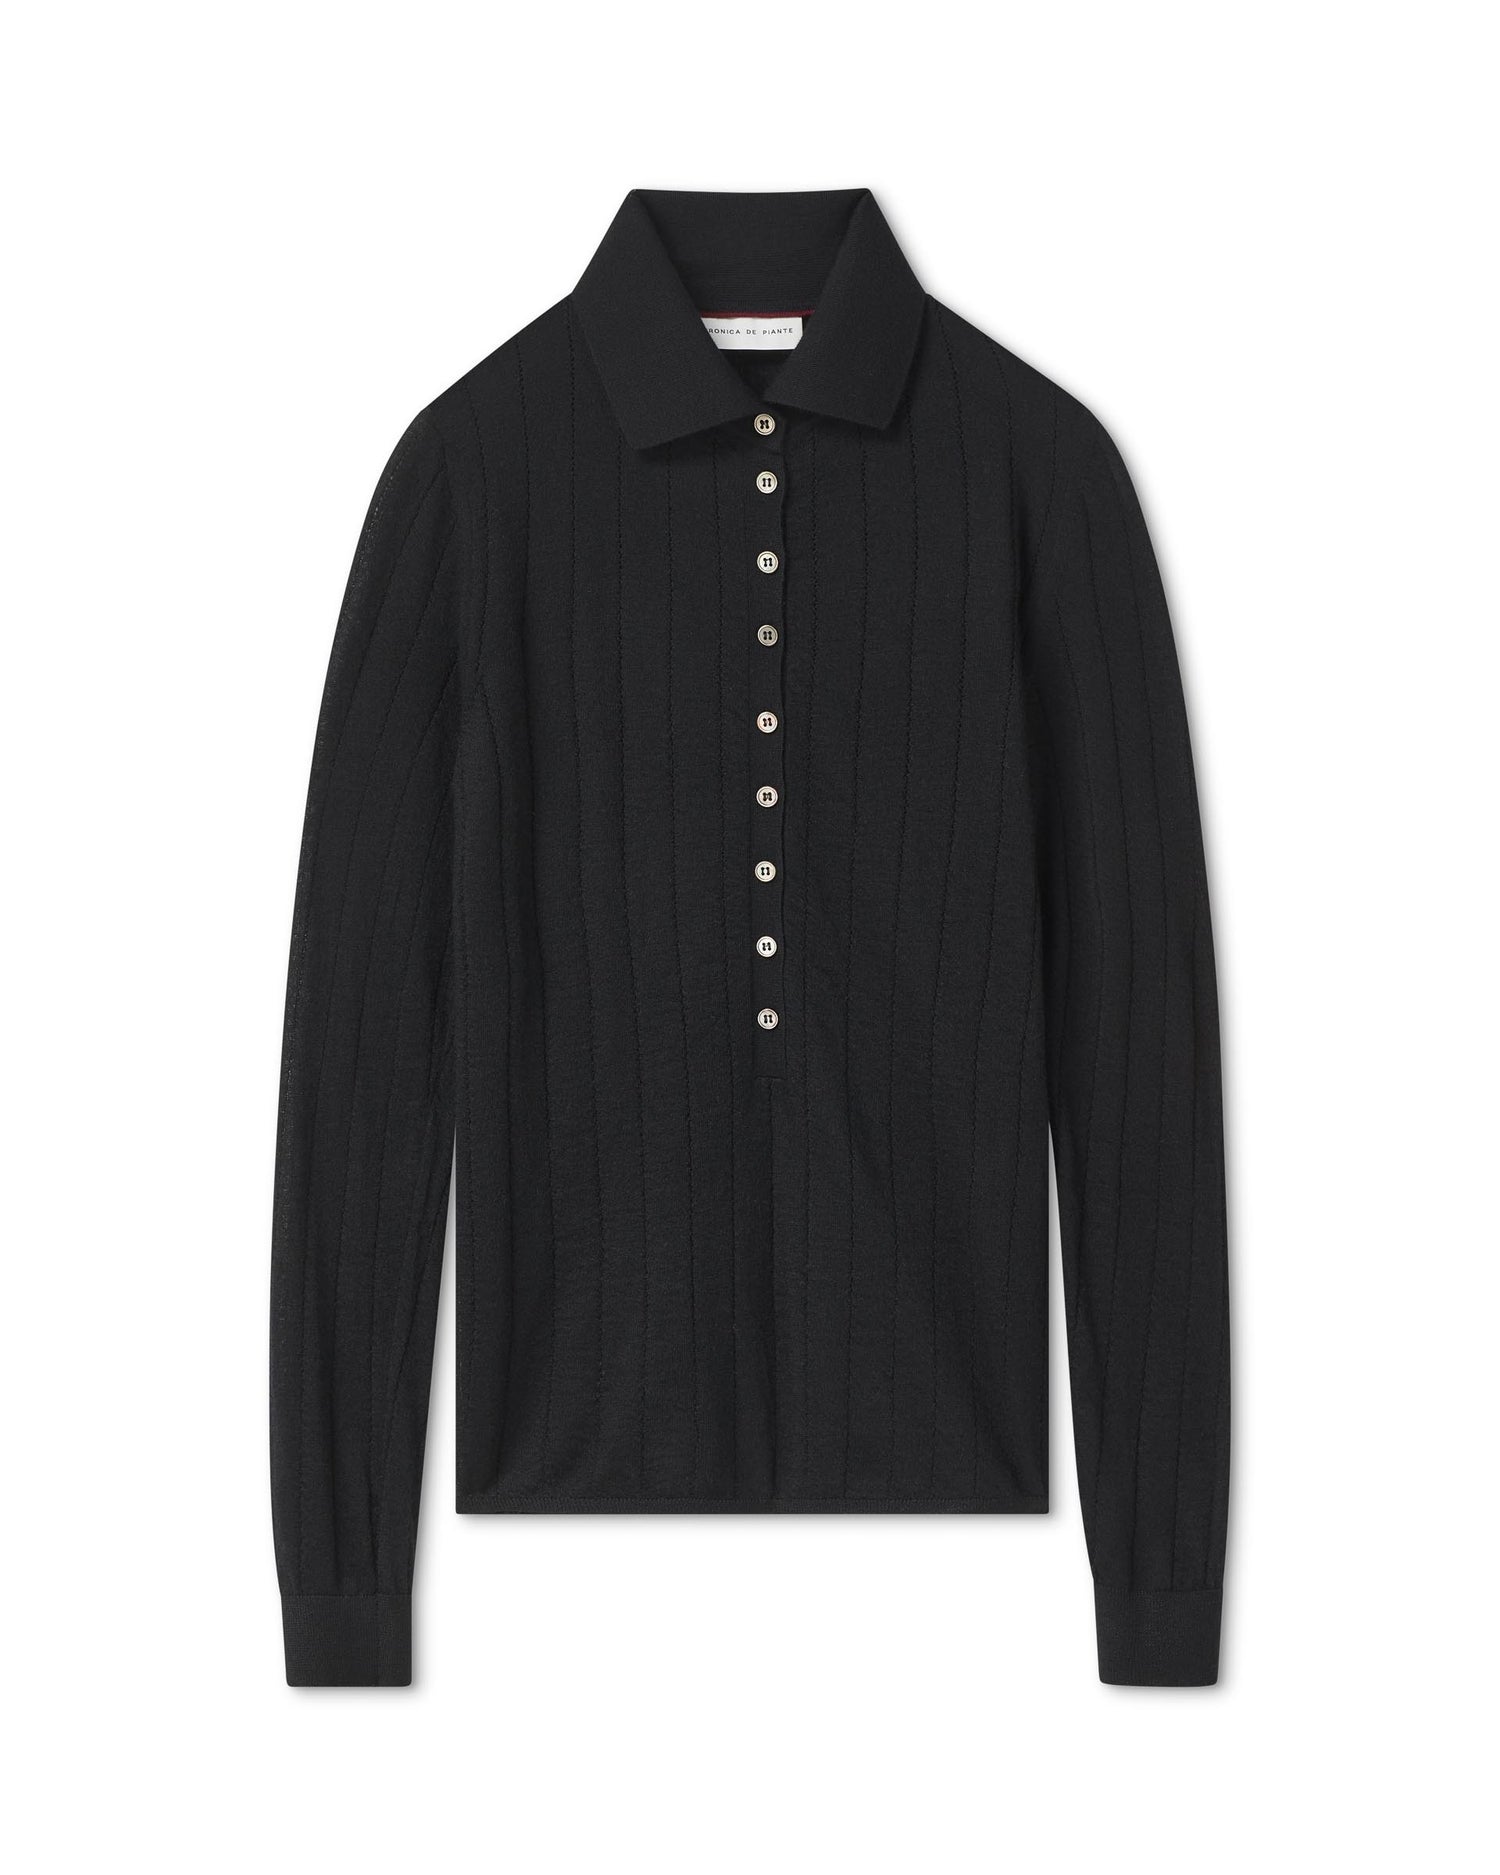 Luna Polo Neck Sweater in Cashmere, Black